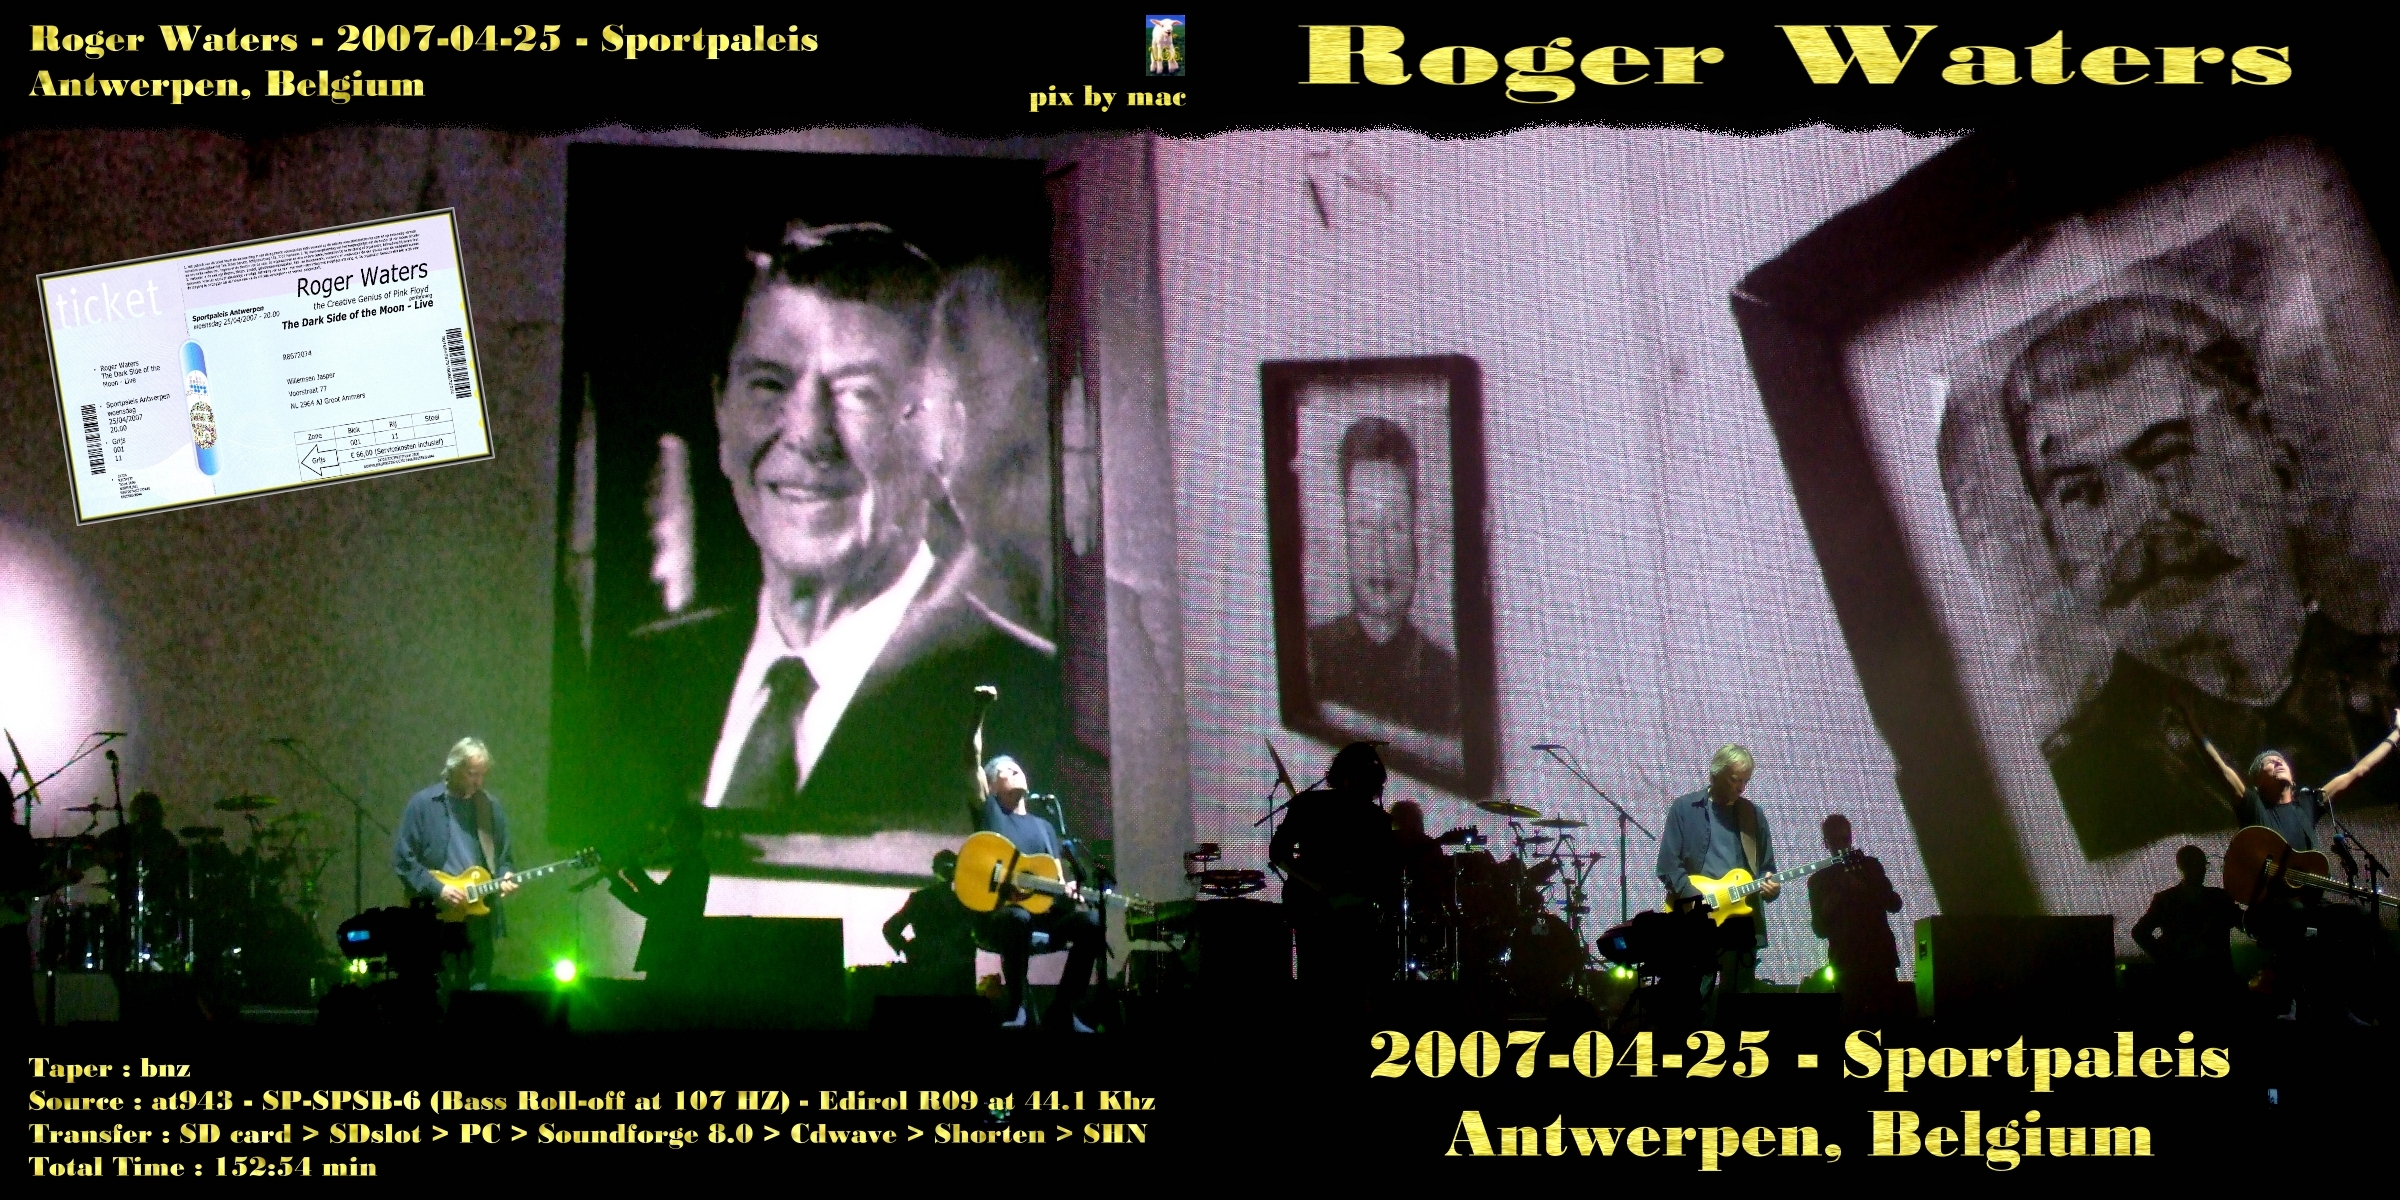 RogerWaters2007-04-25SportpaleisAntwerpenBelgium (3).jpg